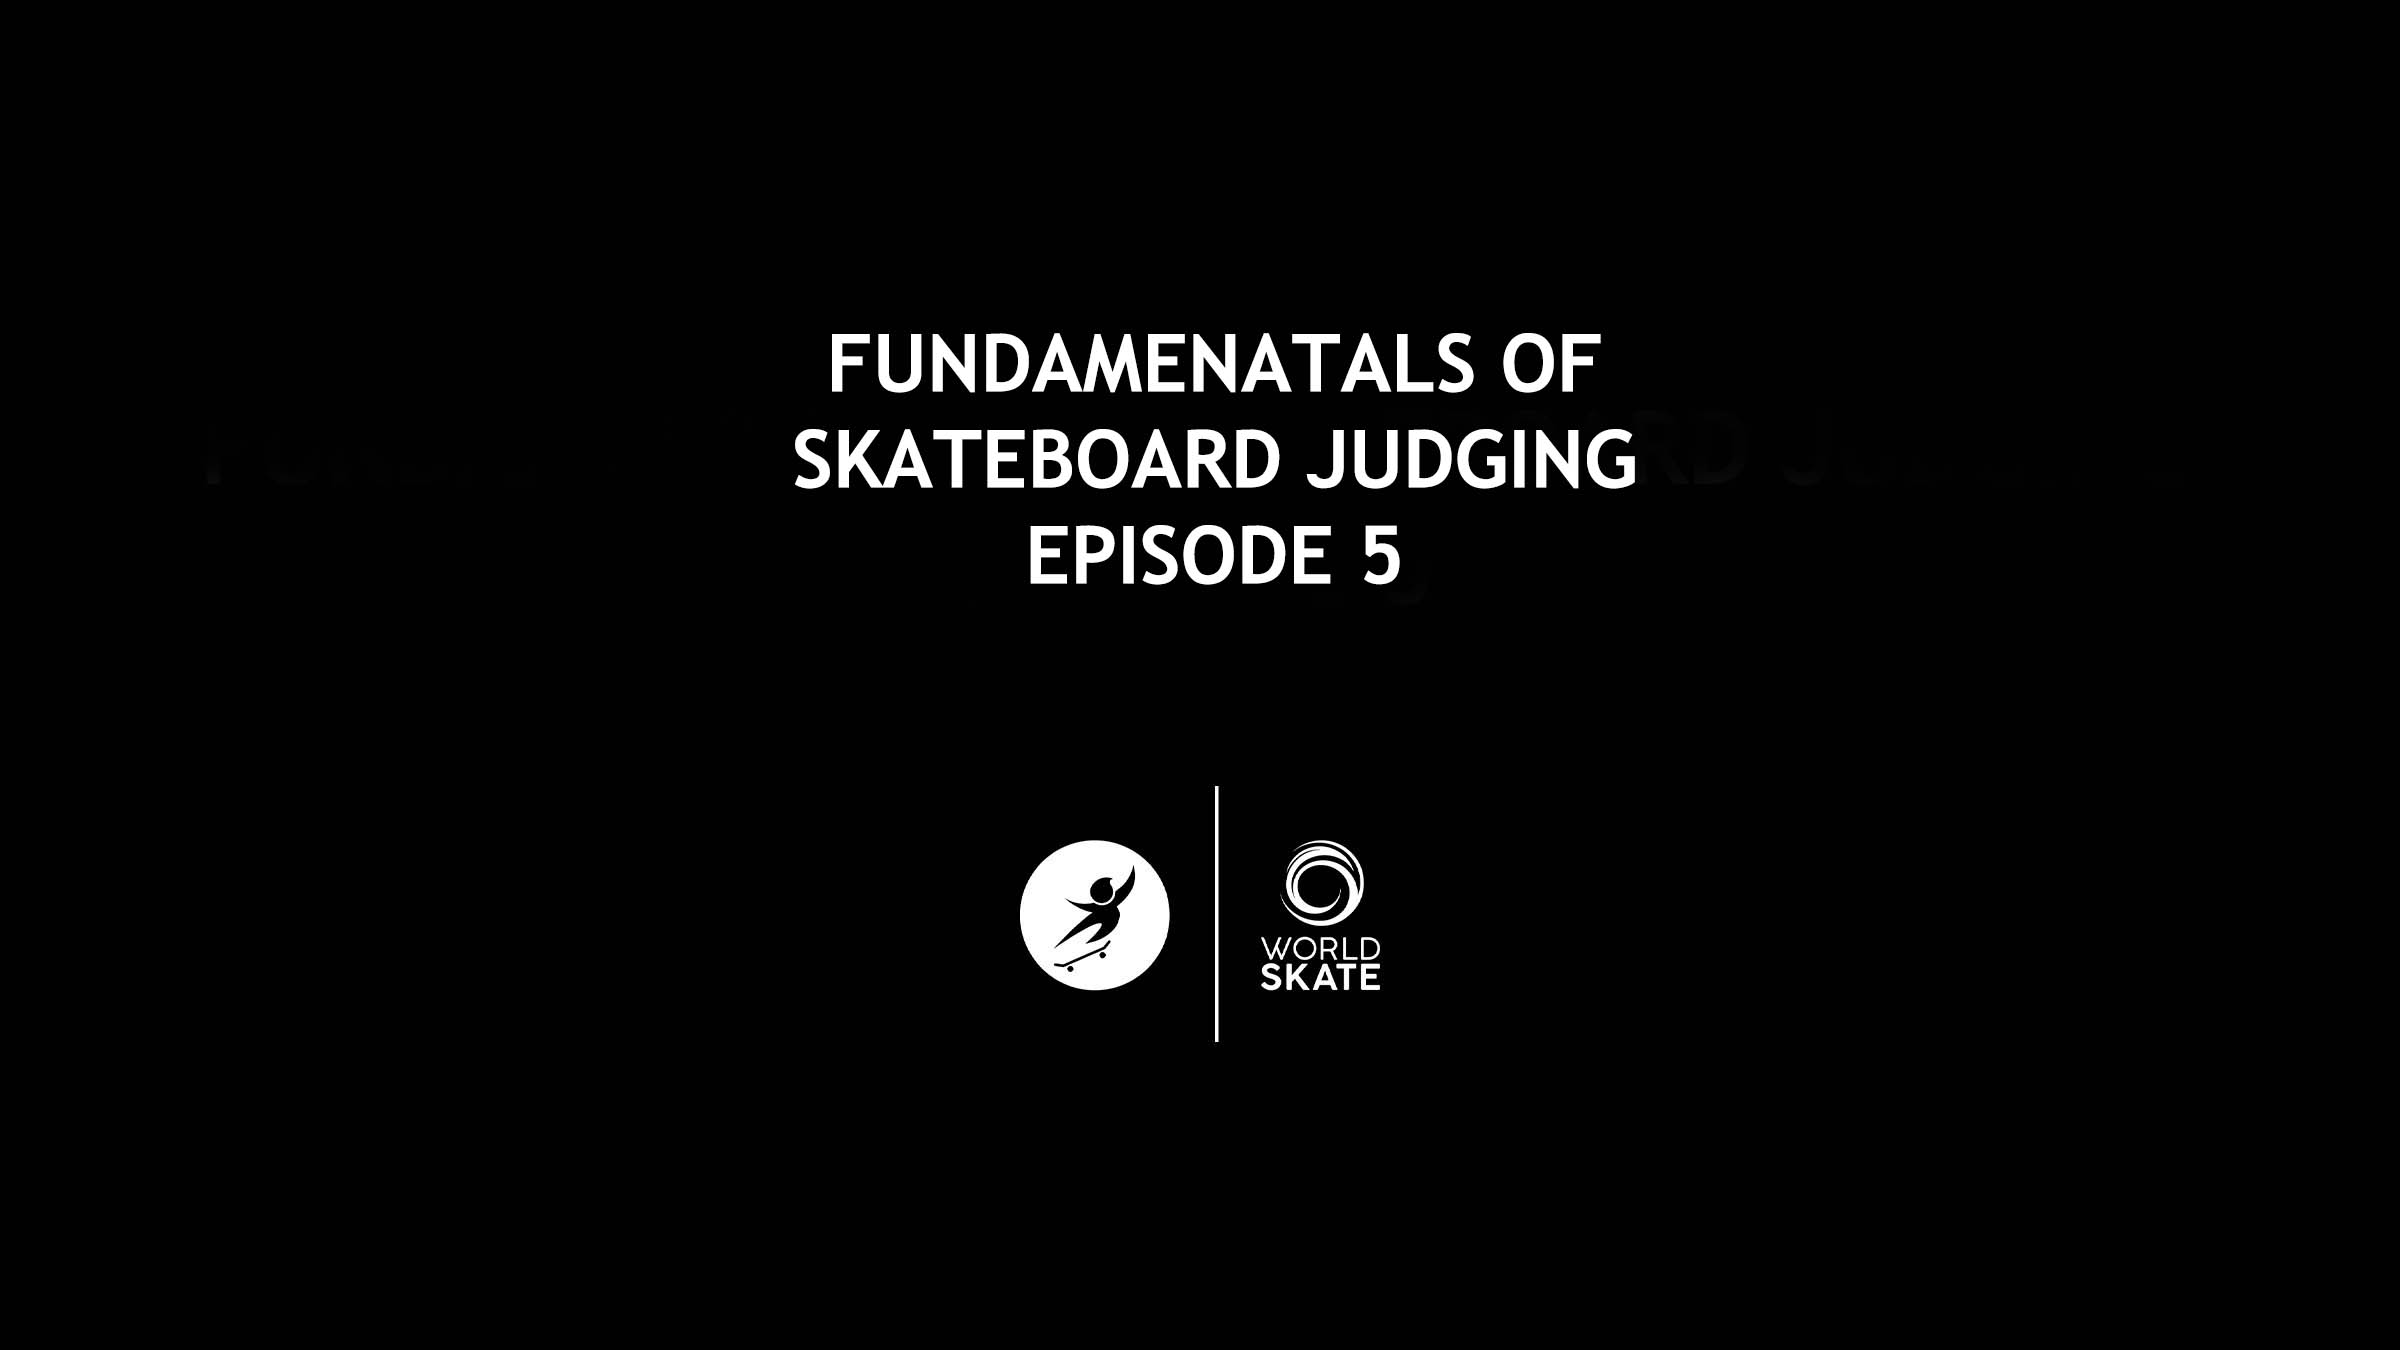 images/Skateboard_Judging_E-Learning/FUNDAMENTALS_OF_SKATEBOARD_JUDGING_EPISODE_5.2_16_9.jpg